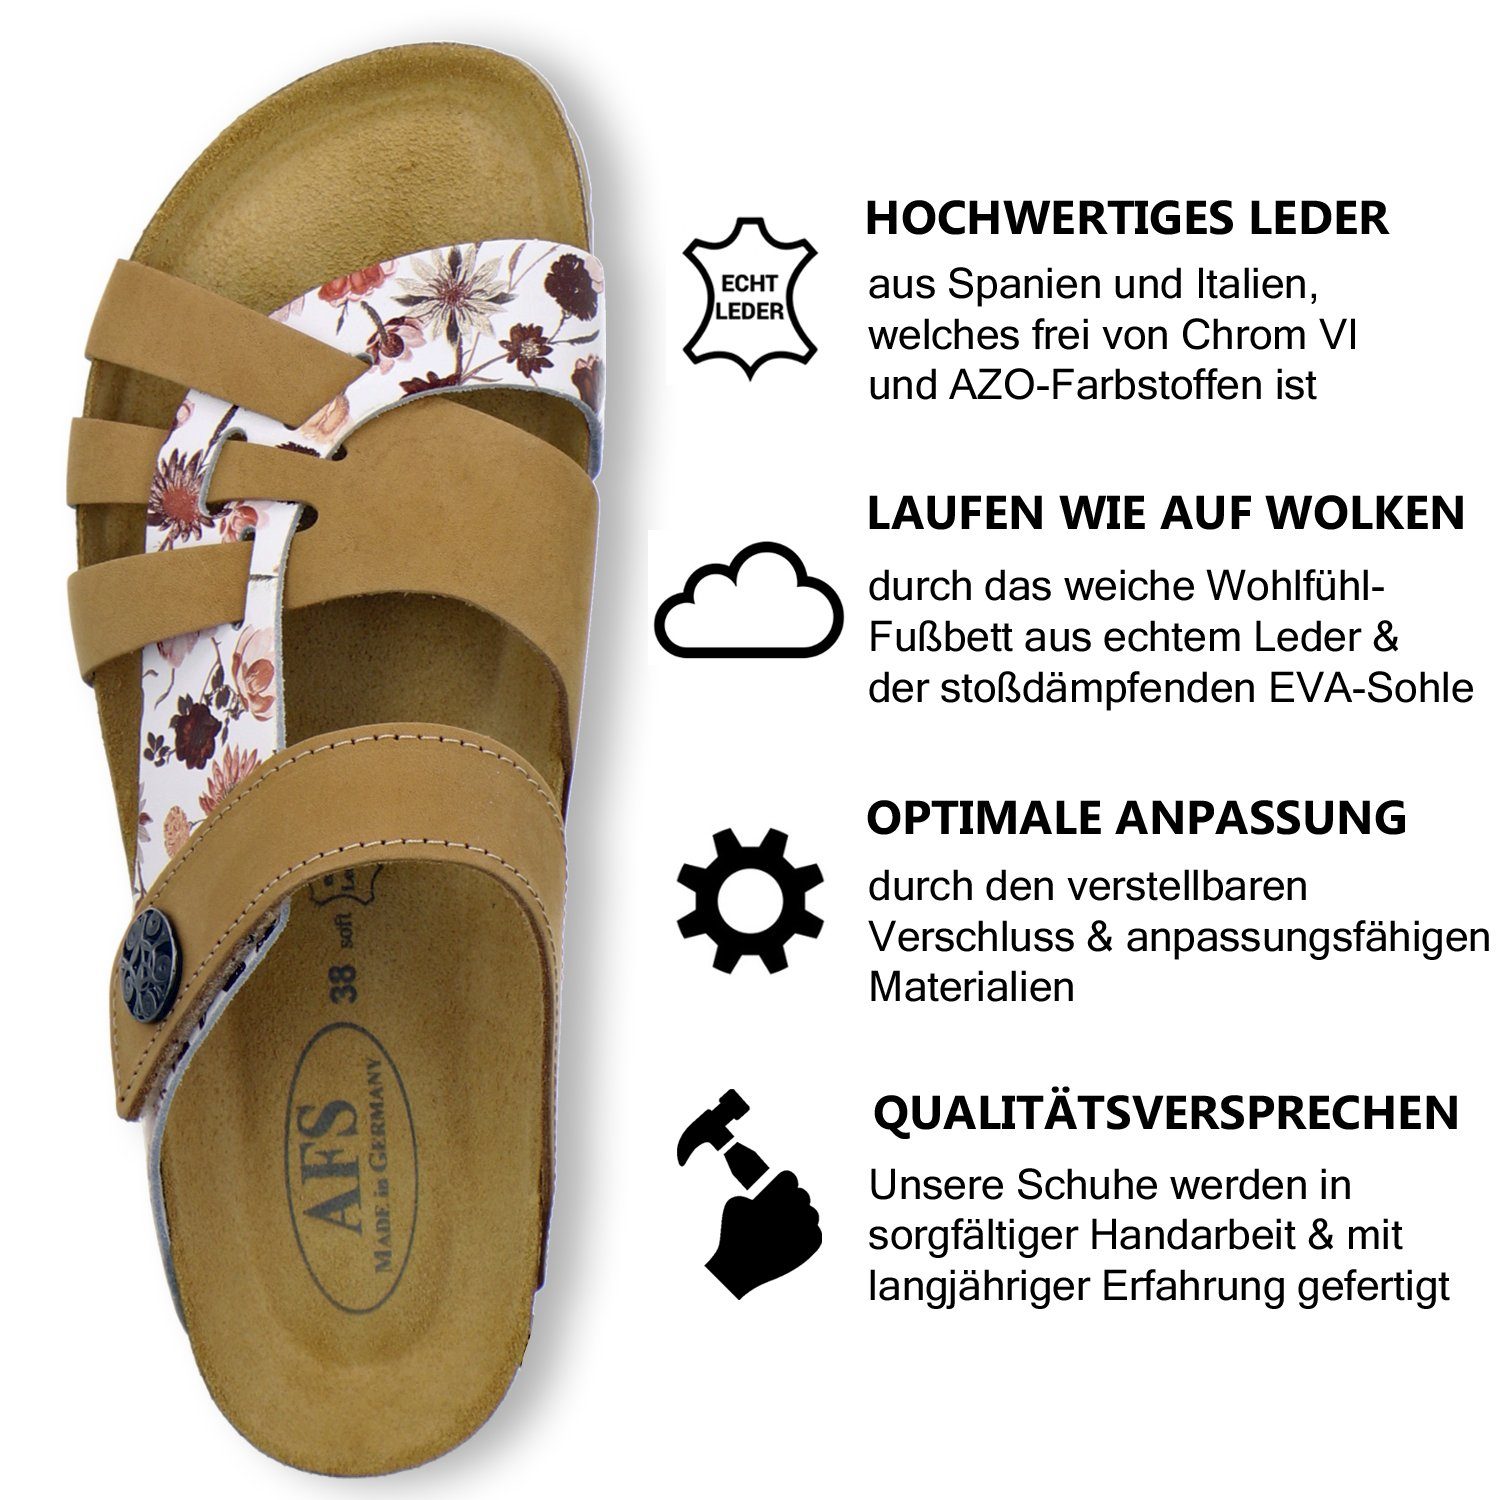 AFS-Schuhe 2120 Klettverschluss; aus Leder in Pantolette Made natur/flower für Damen mit Germany